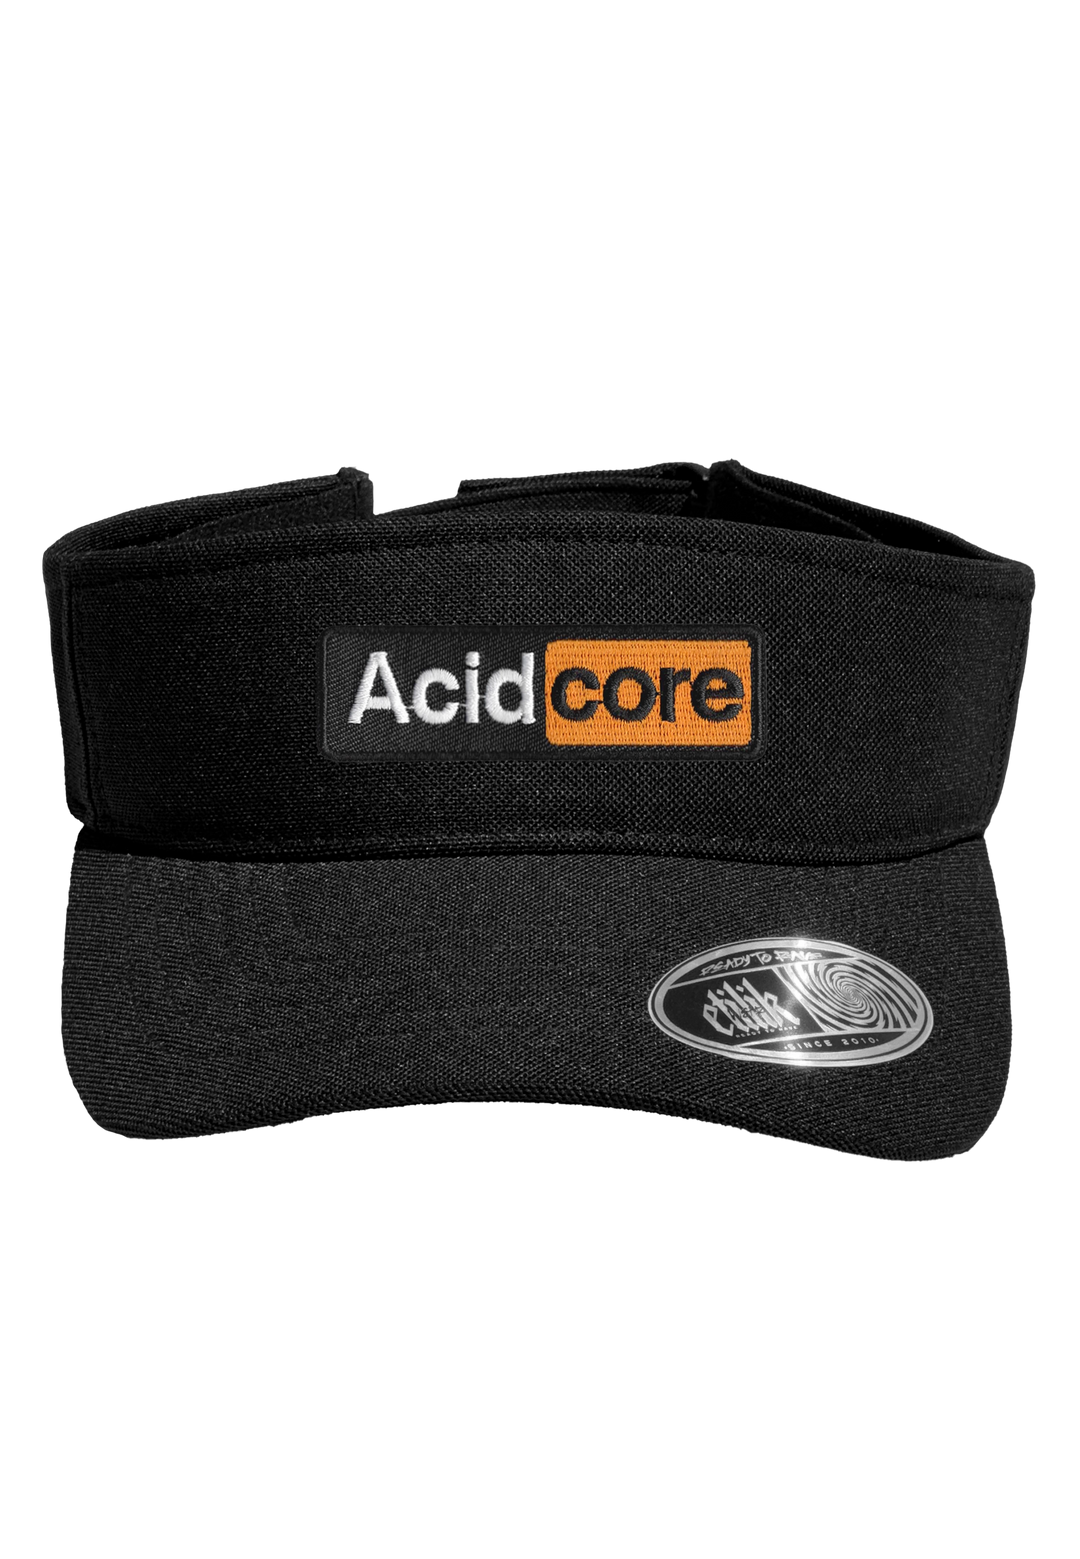 Acidcore - Visor 110 - Etilik Wear 